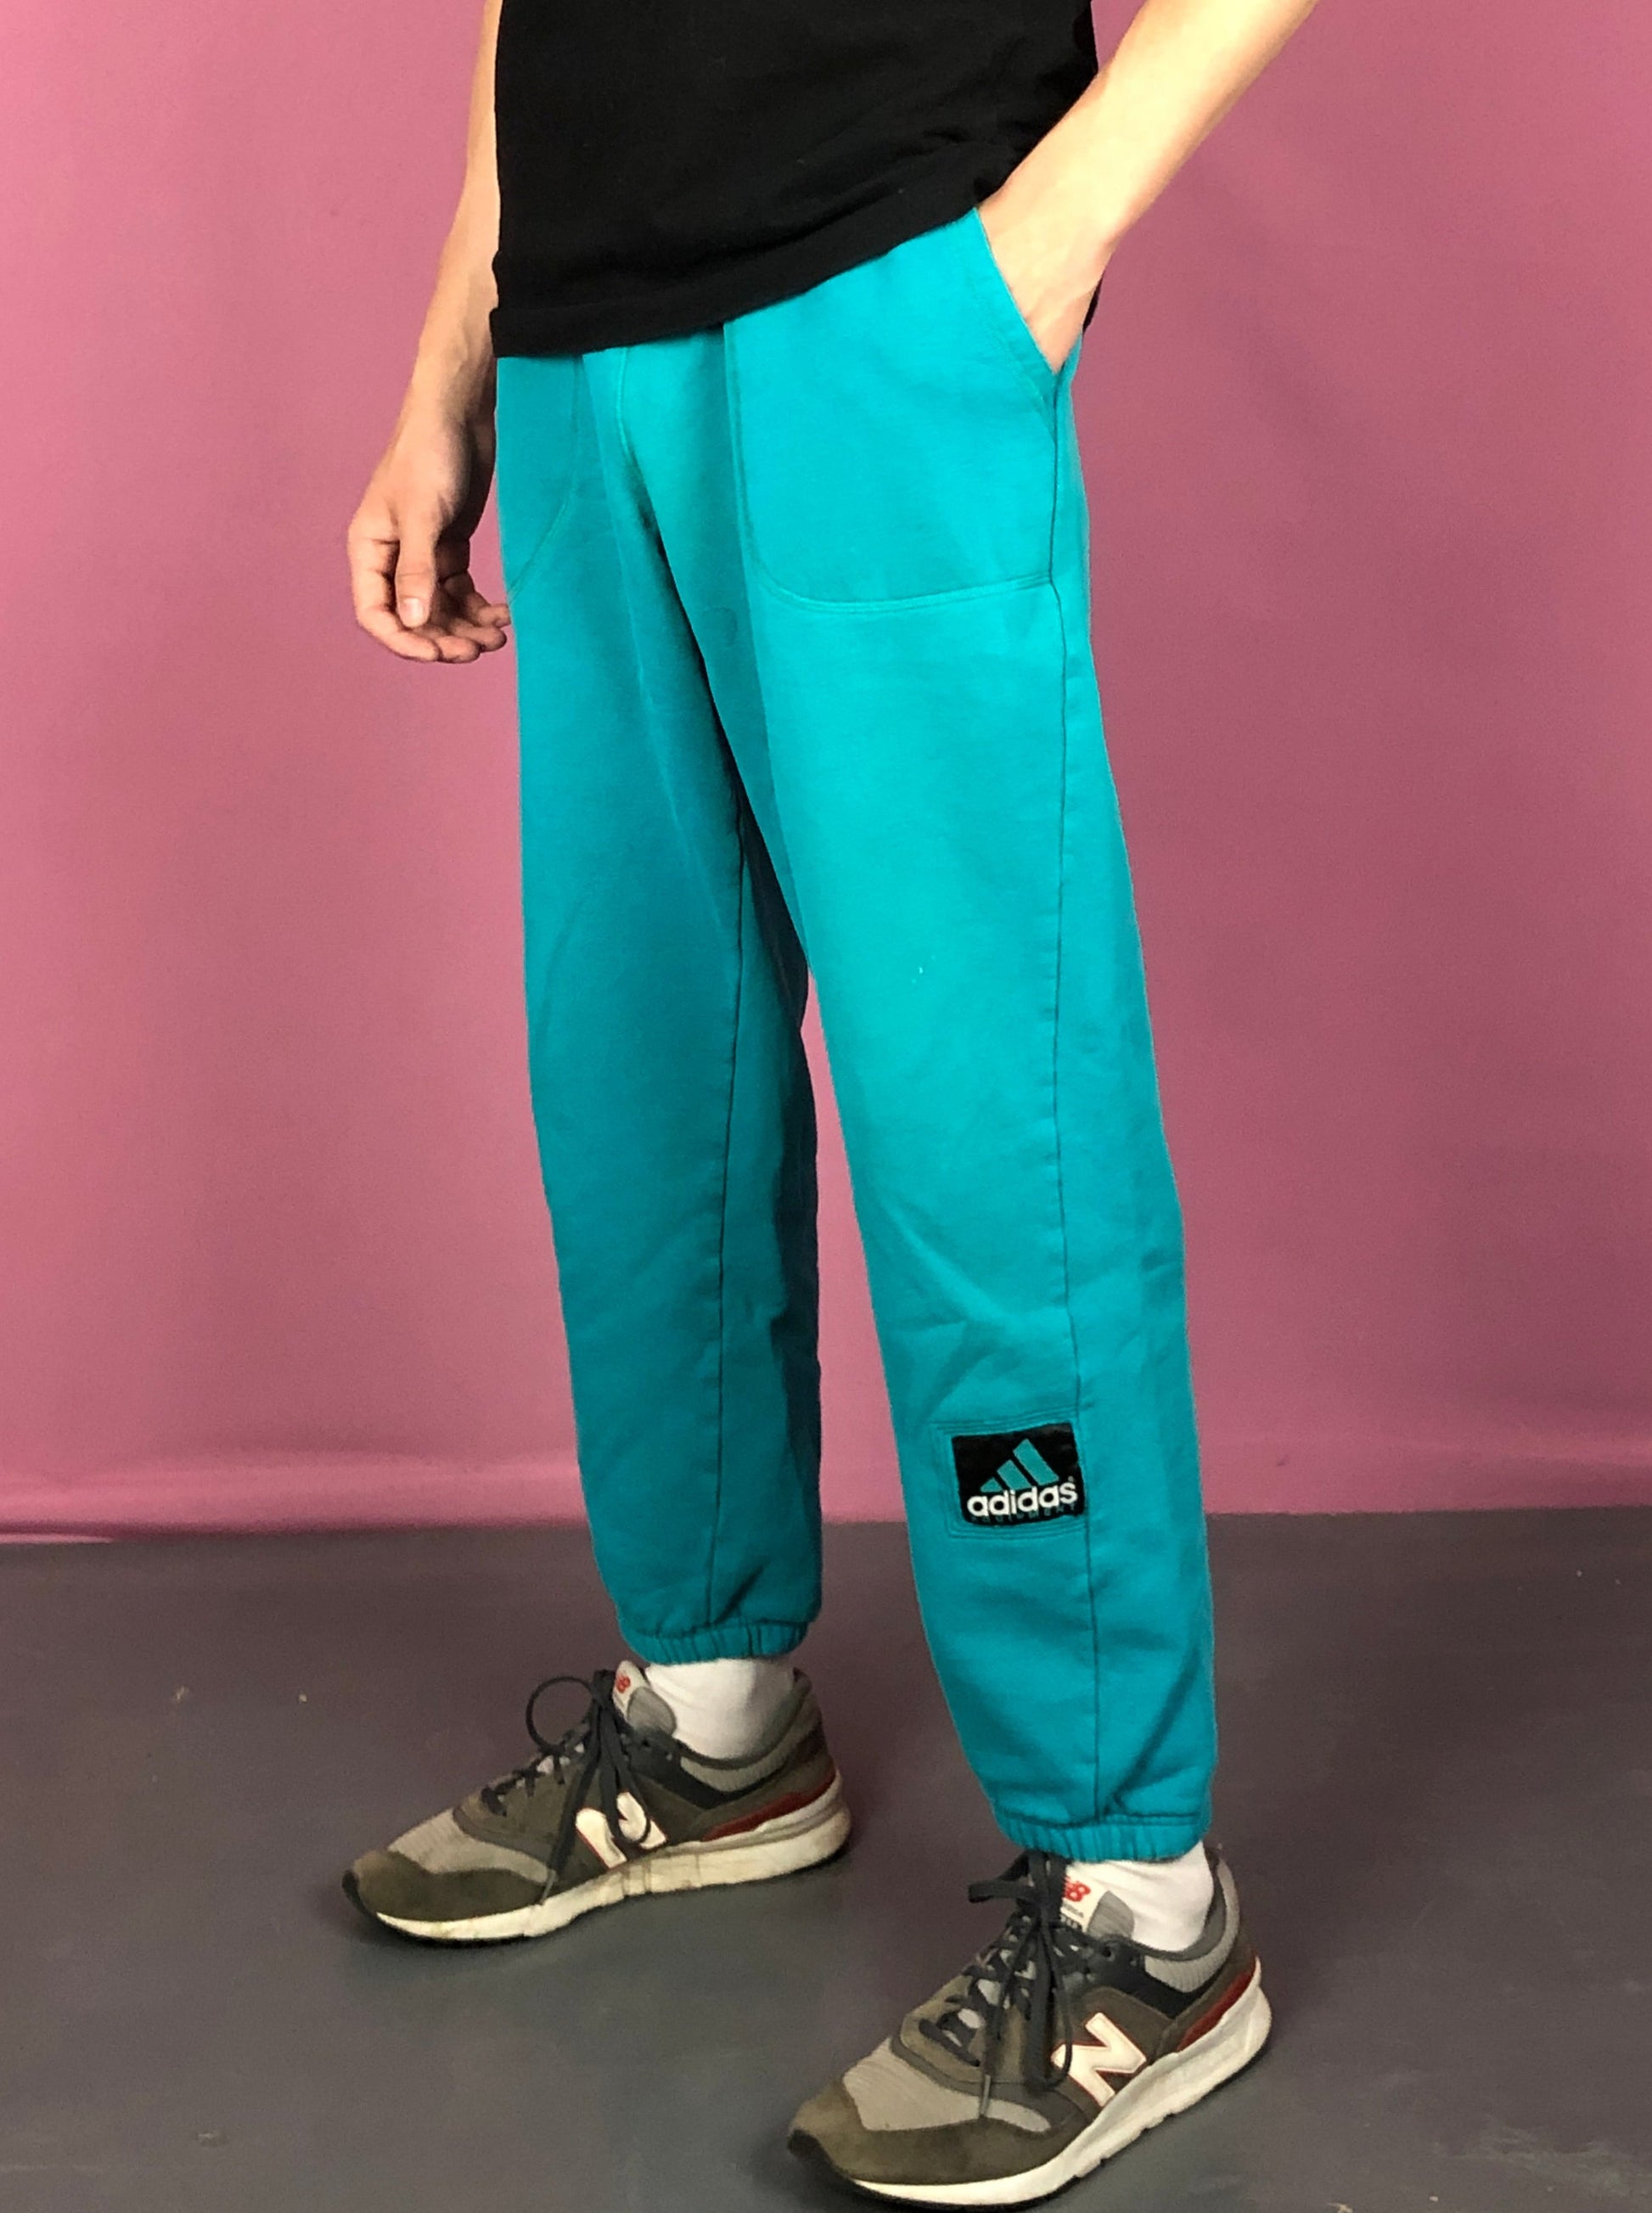 90s Adidas Equipment Vintage Men's Sweatpants - M Blue Cotton Blend